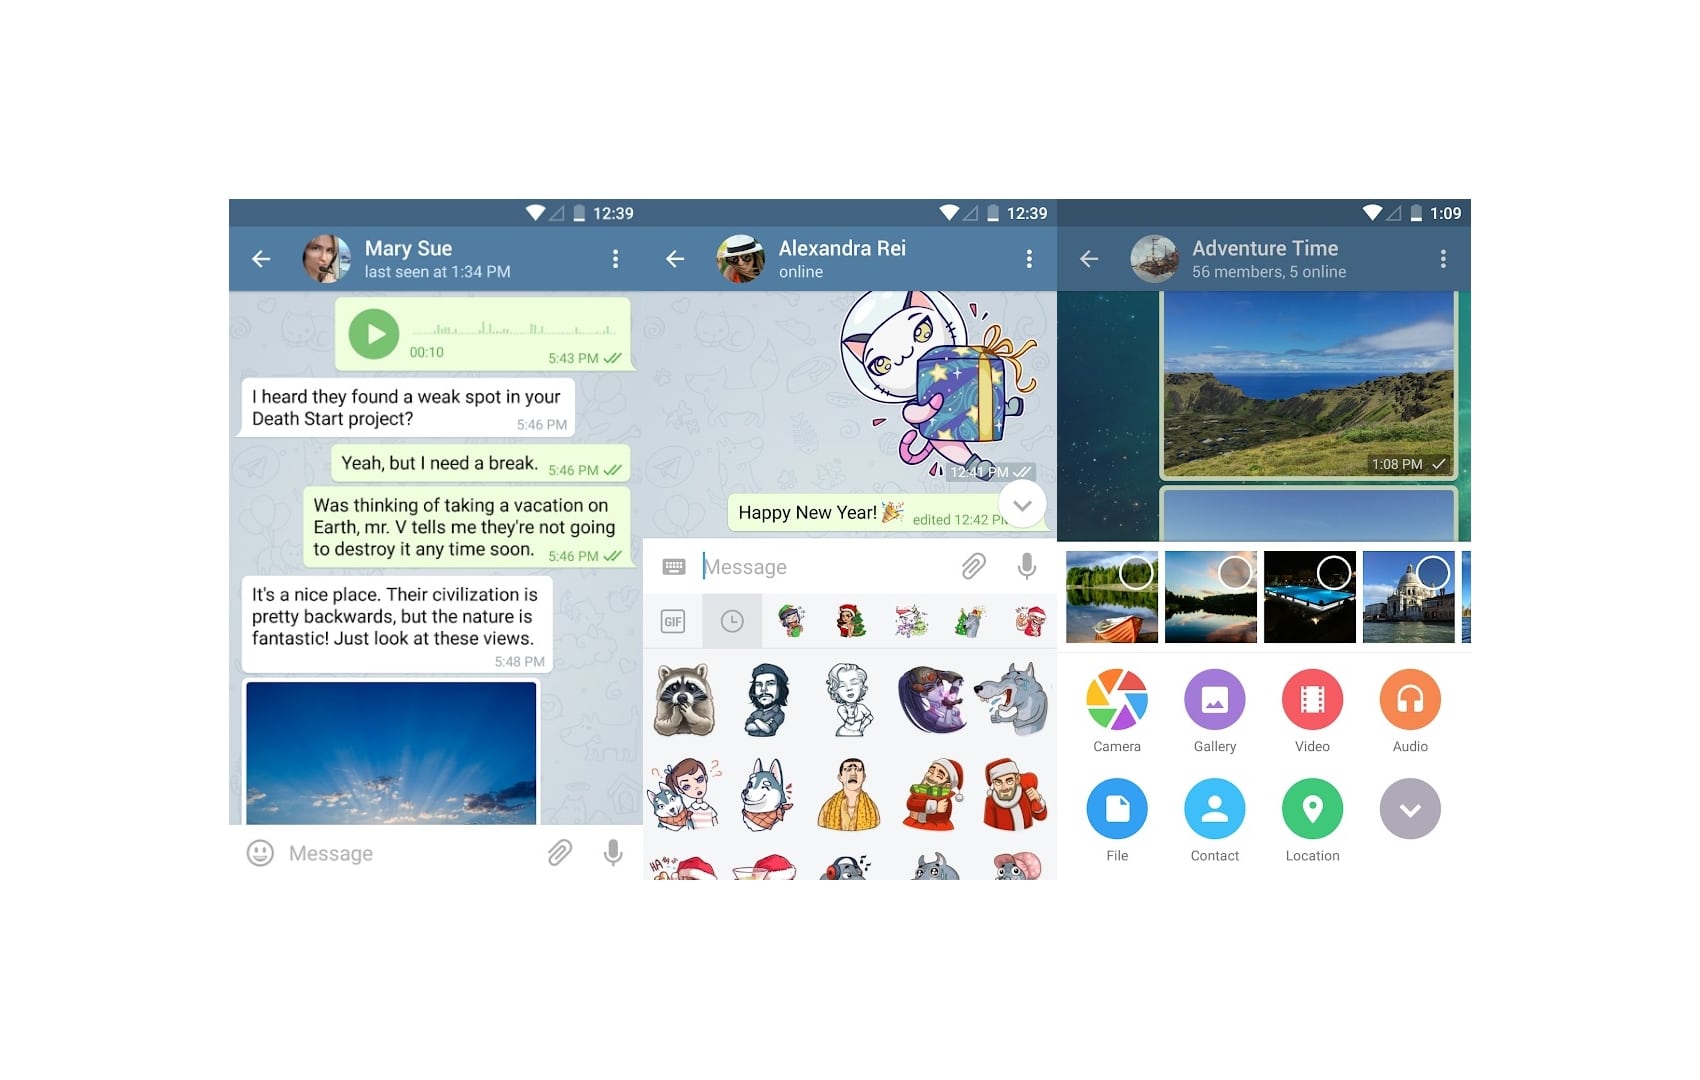 Telegram Android